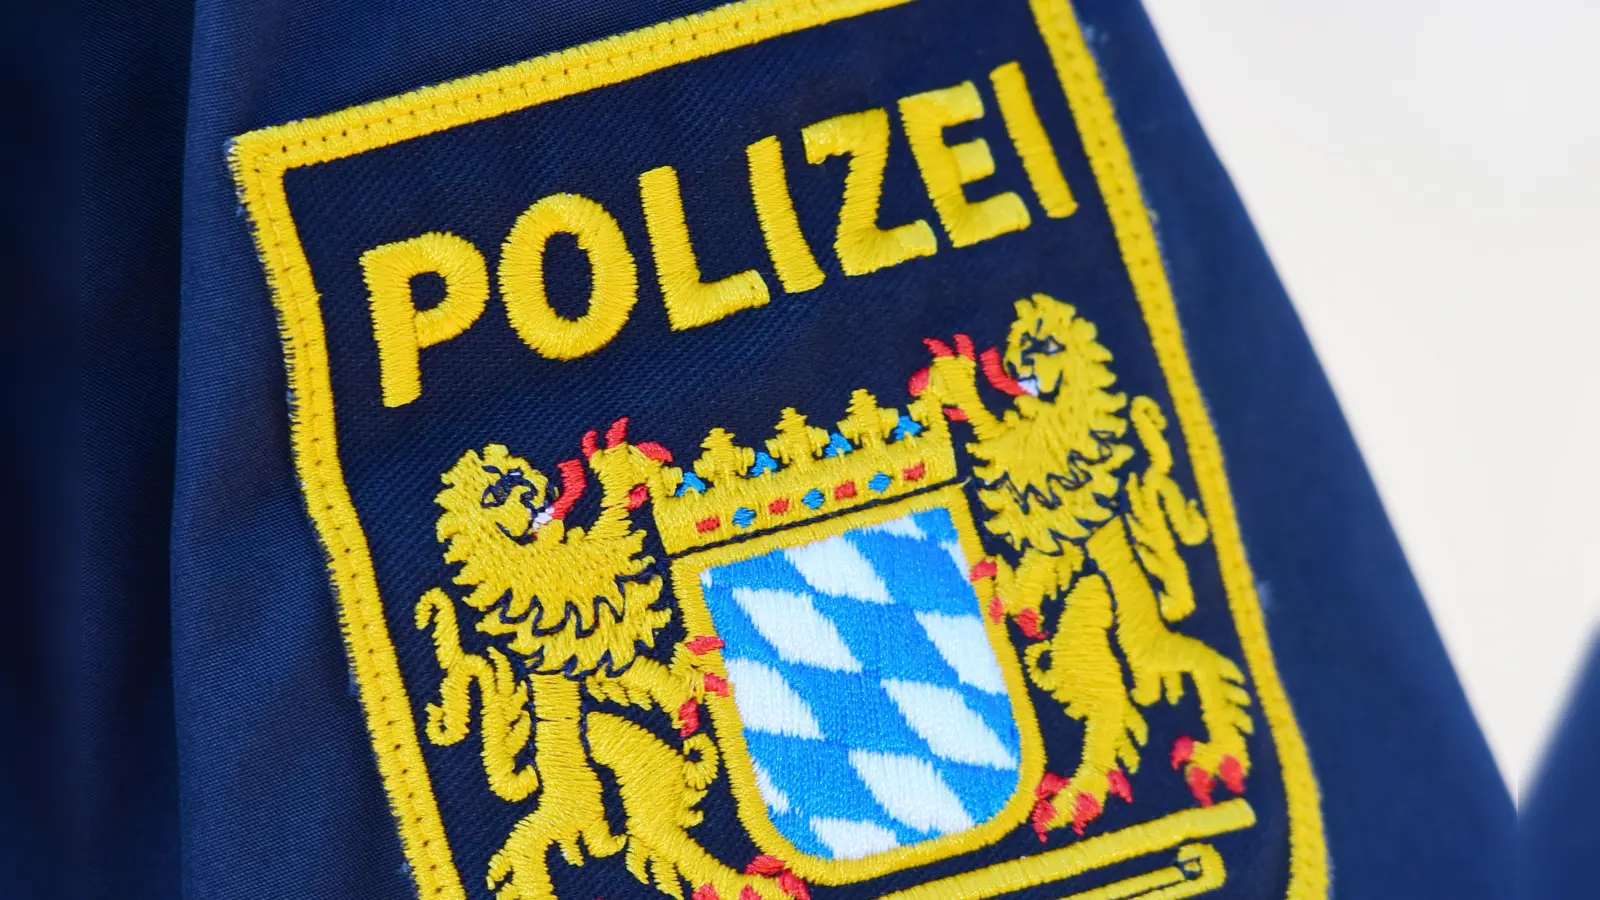 Ein kurioser Fall der Fahrerflucht beschäftigt die Ansbacher Polizei: Ein schrottreifer Firmenwagen wurde in Lehrberg gefunden - vom Schuldigen keine Spur.  (Symbolbild: Jim Albright)